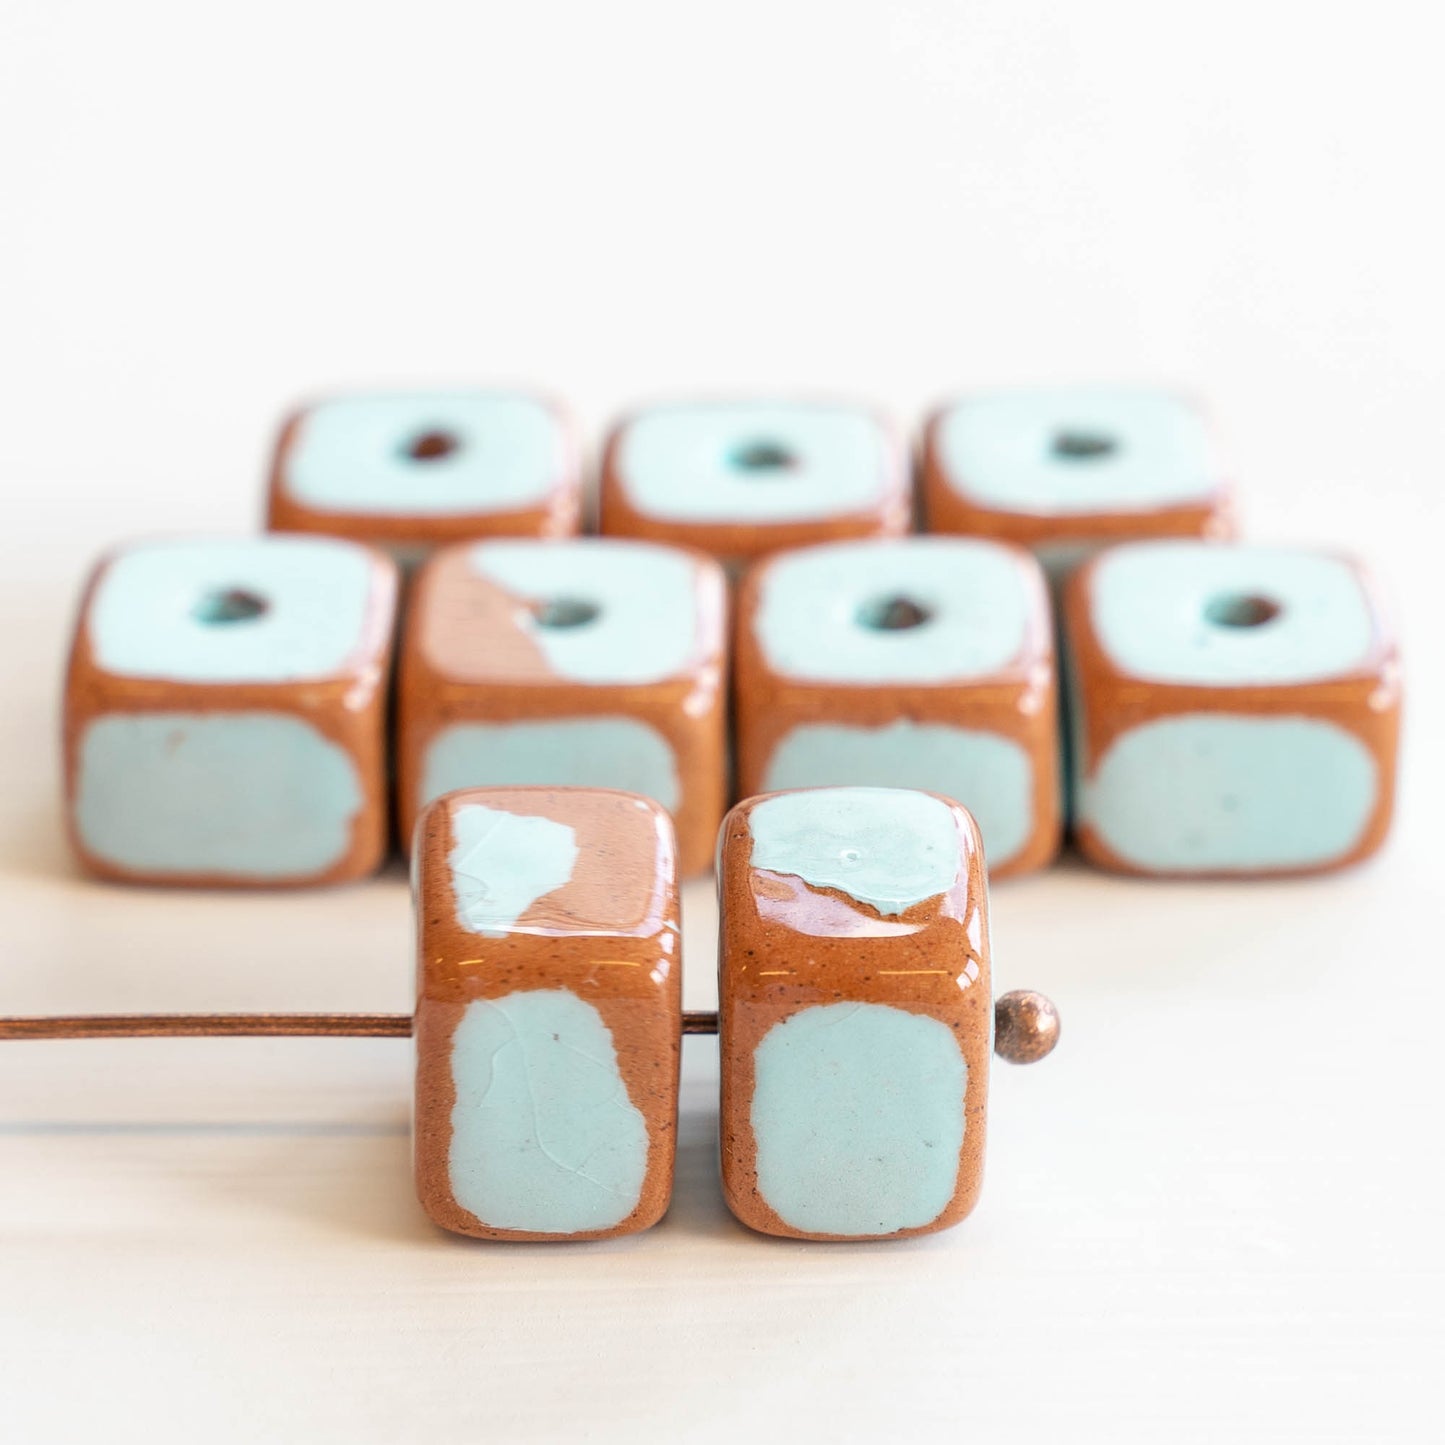 10x14mm Shiny Glazed Ceramic Cube Beads - Baby Blue - Choose Amount